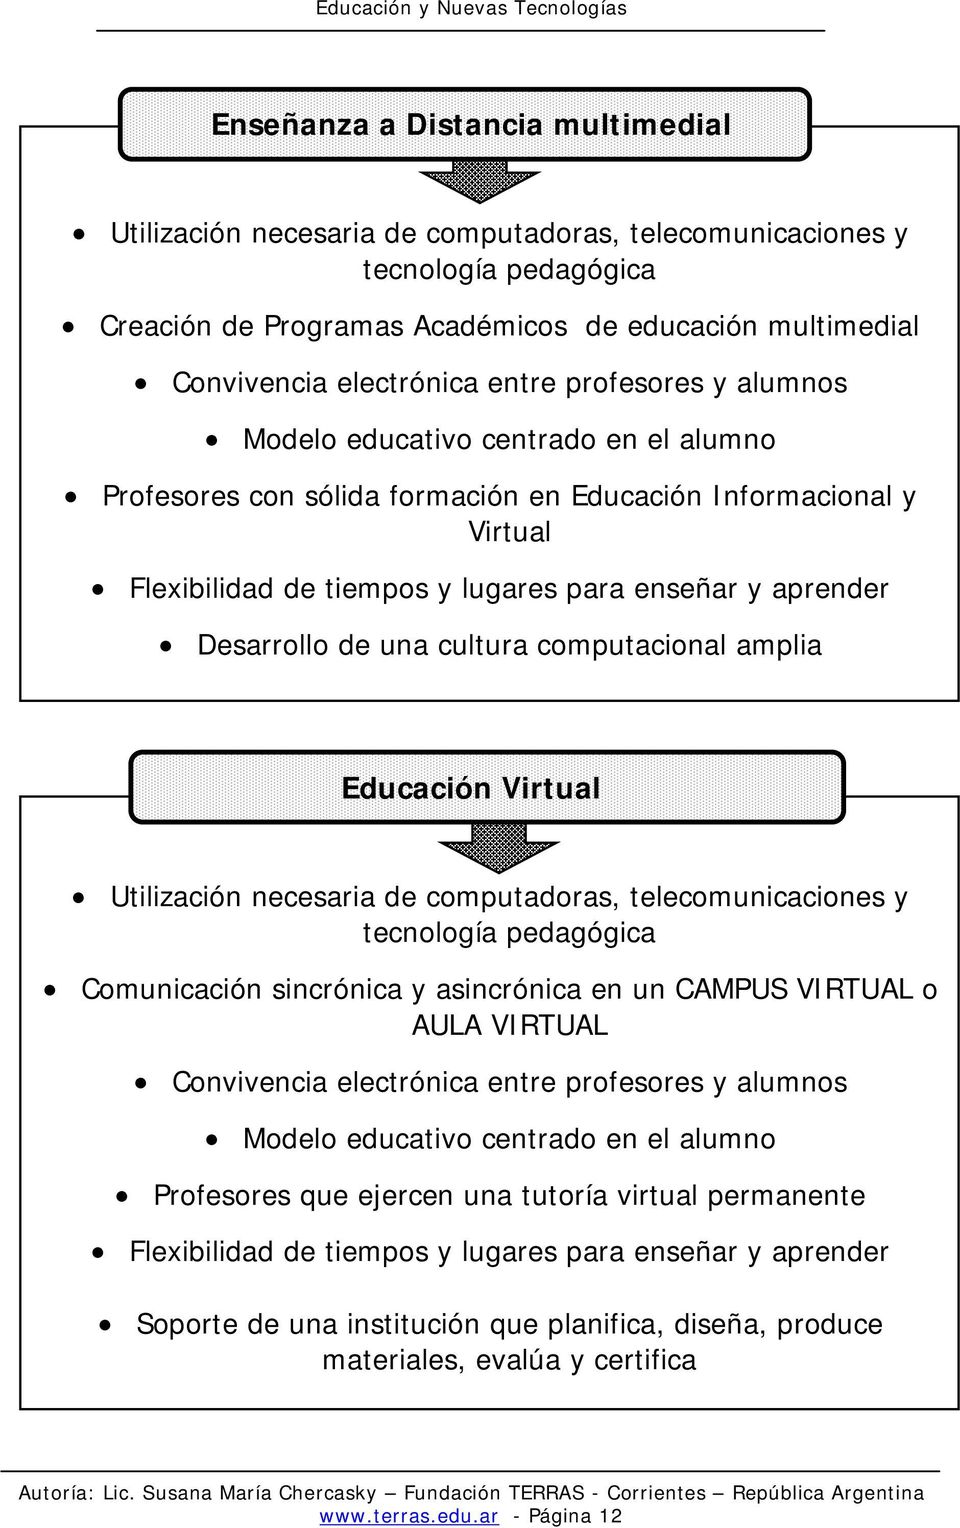 Desarrollo de una cultura computacional amplia Educación Virtual Utilización necesaria de computadoras, telecomunicaciones y tecnología pedagógica Comunicación sincrónica y asincrónica en un CAMPUS